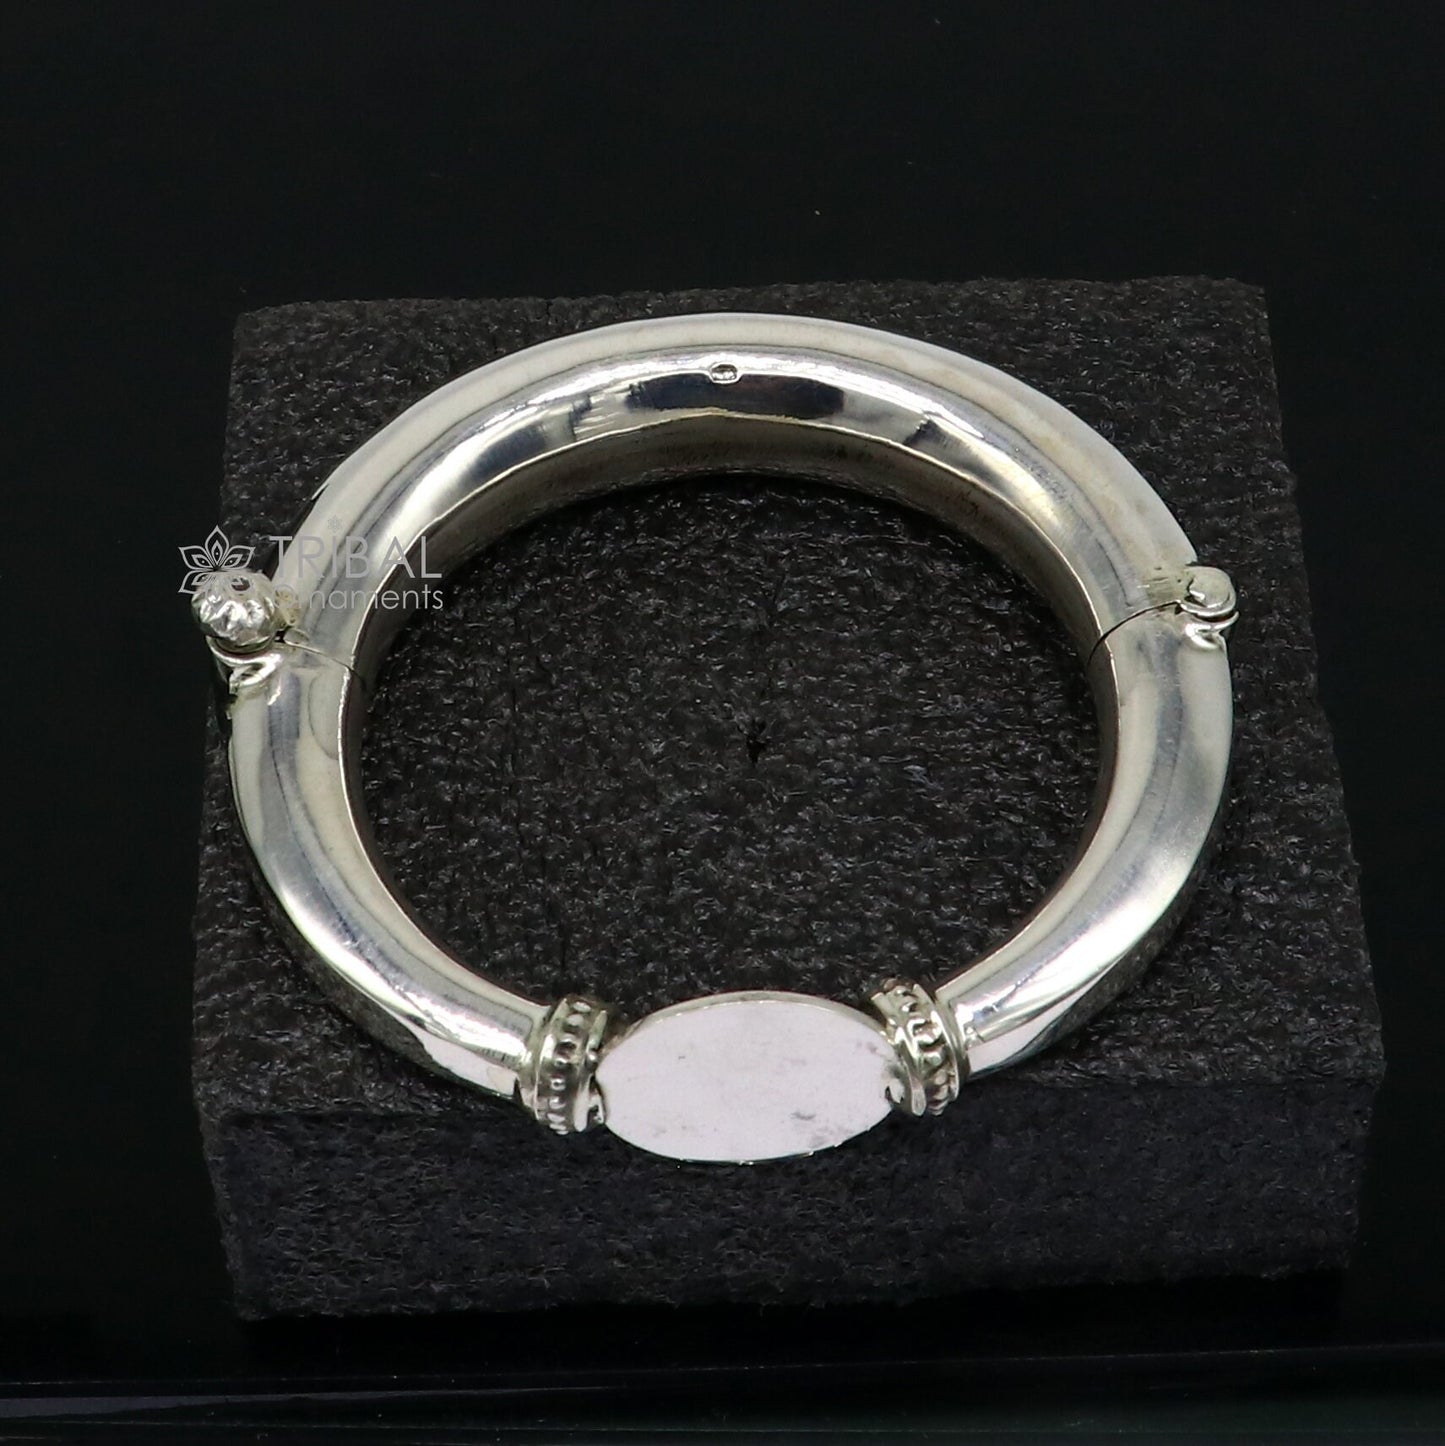 Unique vintage design 925 sterling silver vintage plain design handmade bangle bracelet kada cuff bracelet ethnic Banjara jewelry nsk731 - TRIBAL ORNAMENTS